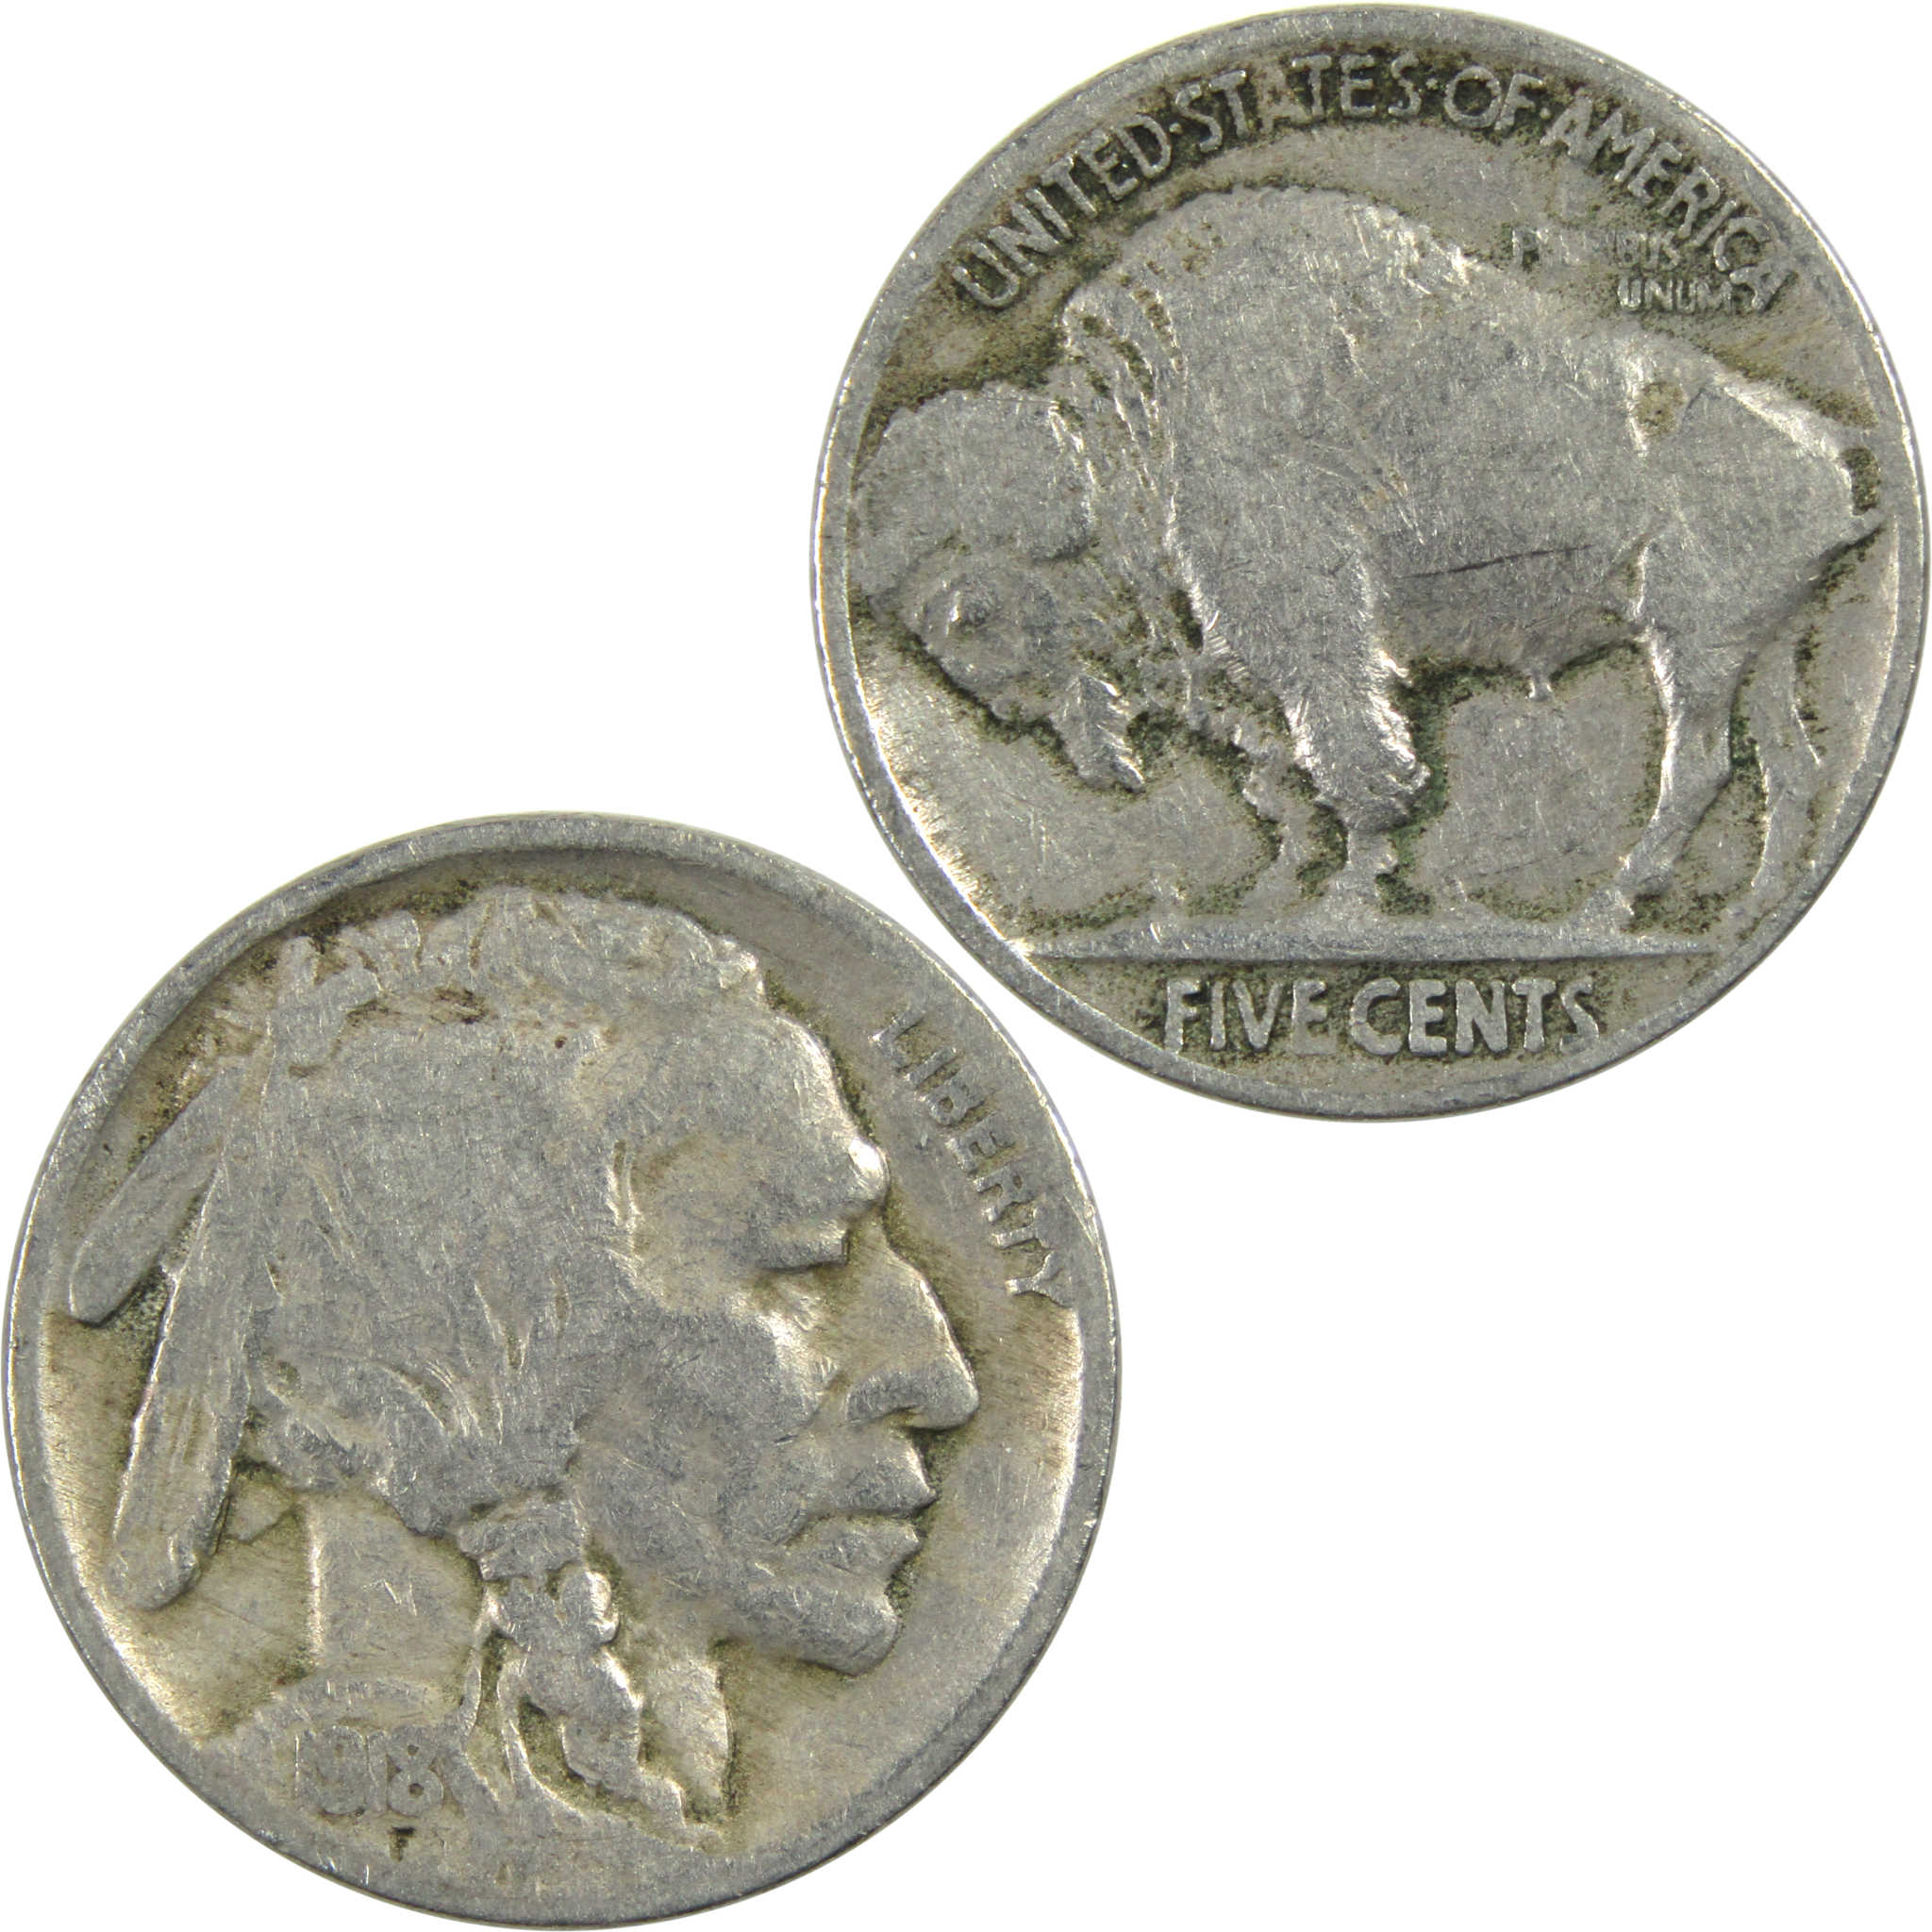 1918 Indian Head Buffalo Nickel VG Very Good 5c Coin SKU:I13006